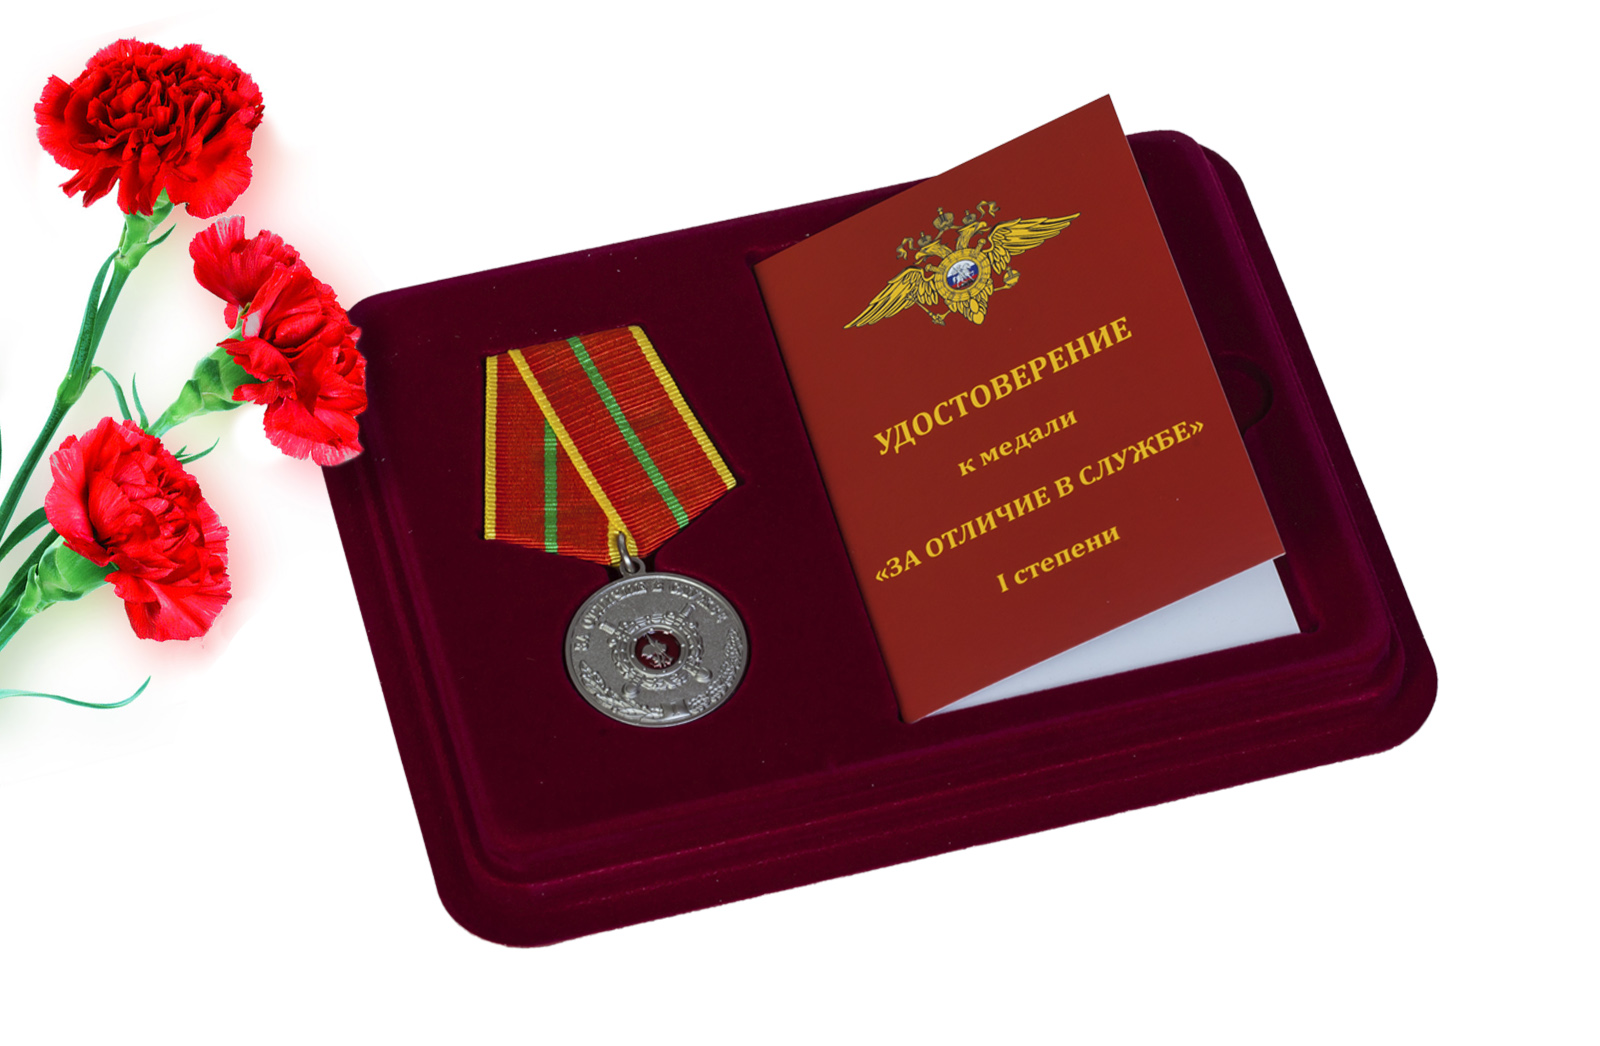 Купить медаль МВД России За отличие в службе 1 степени с доставкой по России